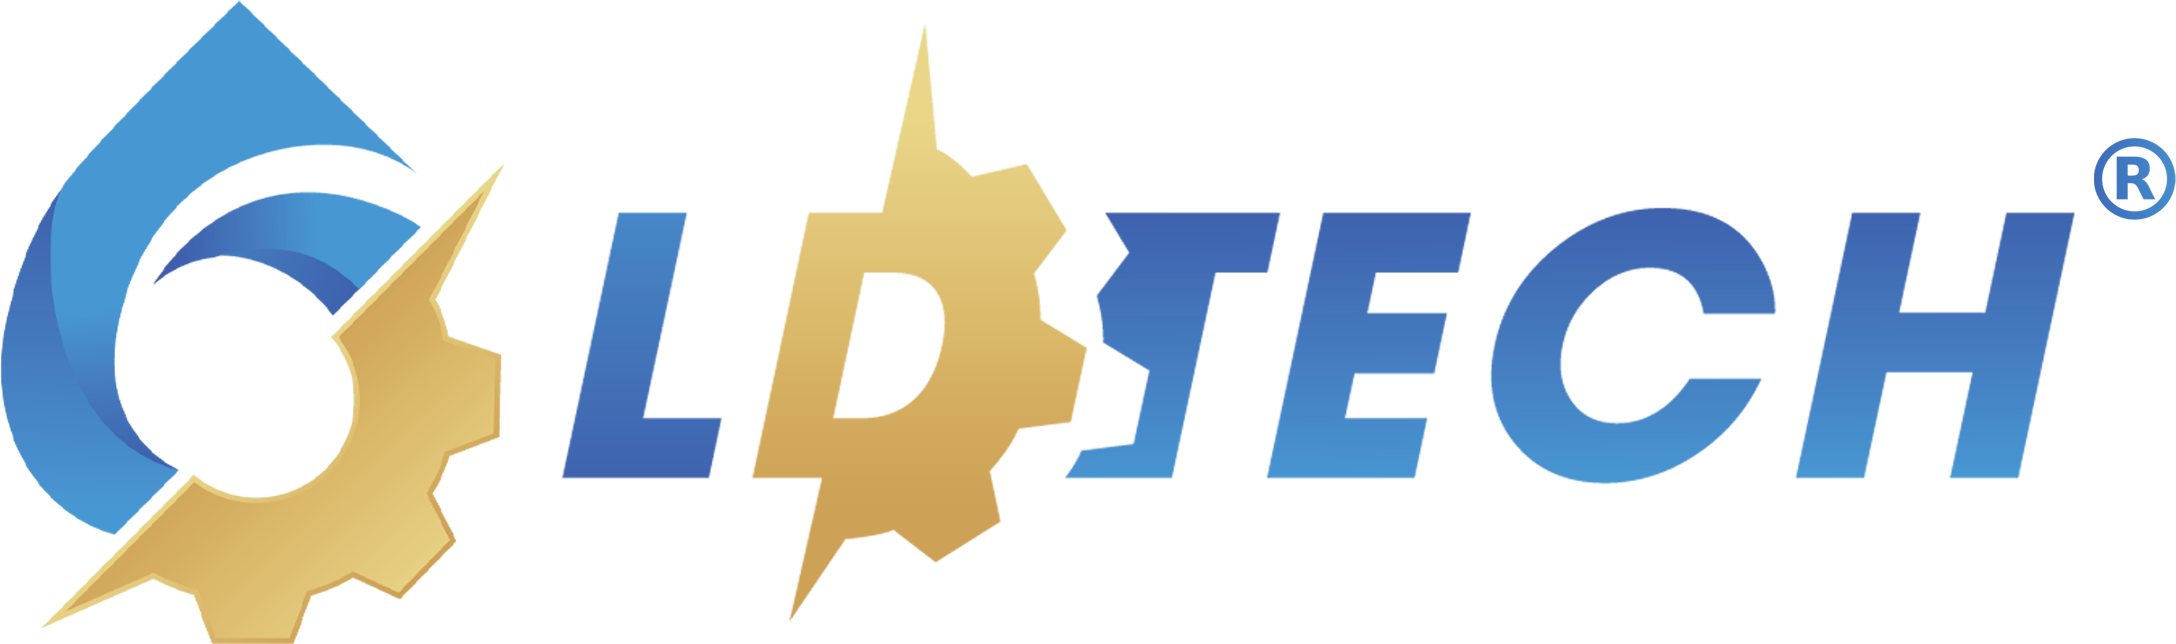 logo LDTech